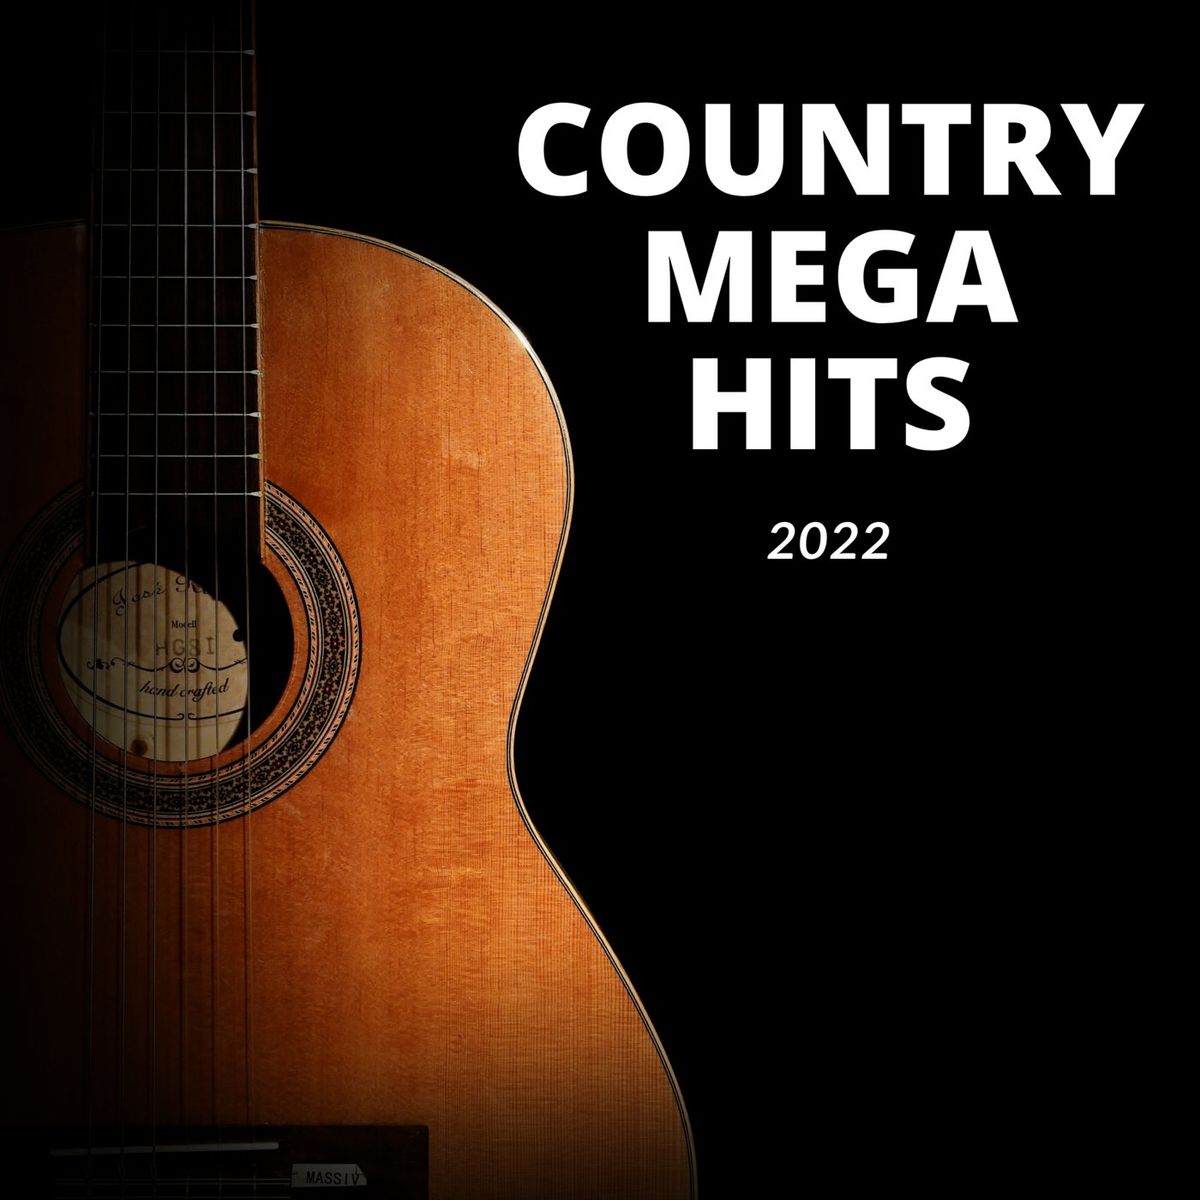 Country Mega Hits 2022 (2022 · FLAC+MP3)